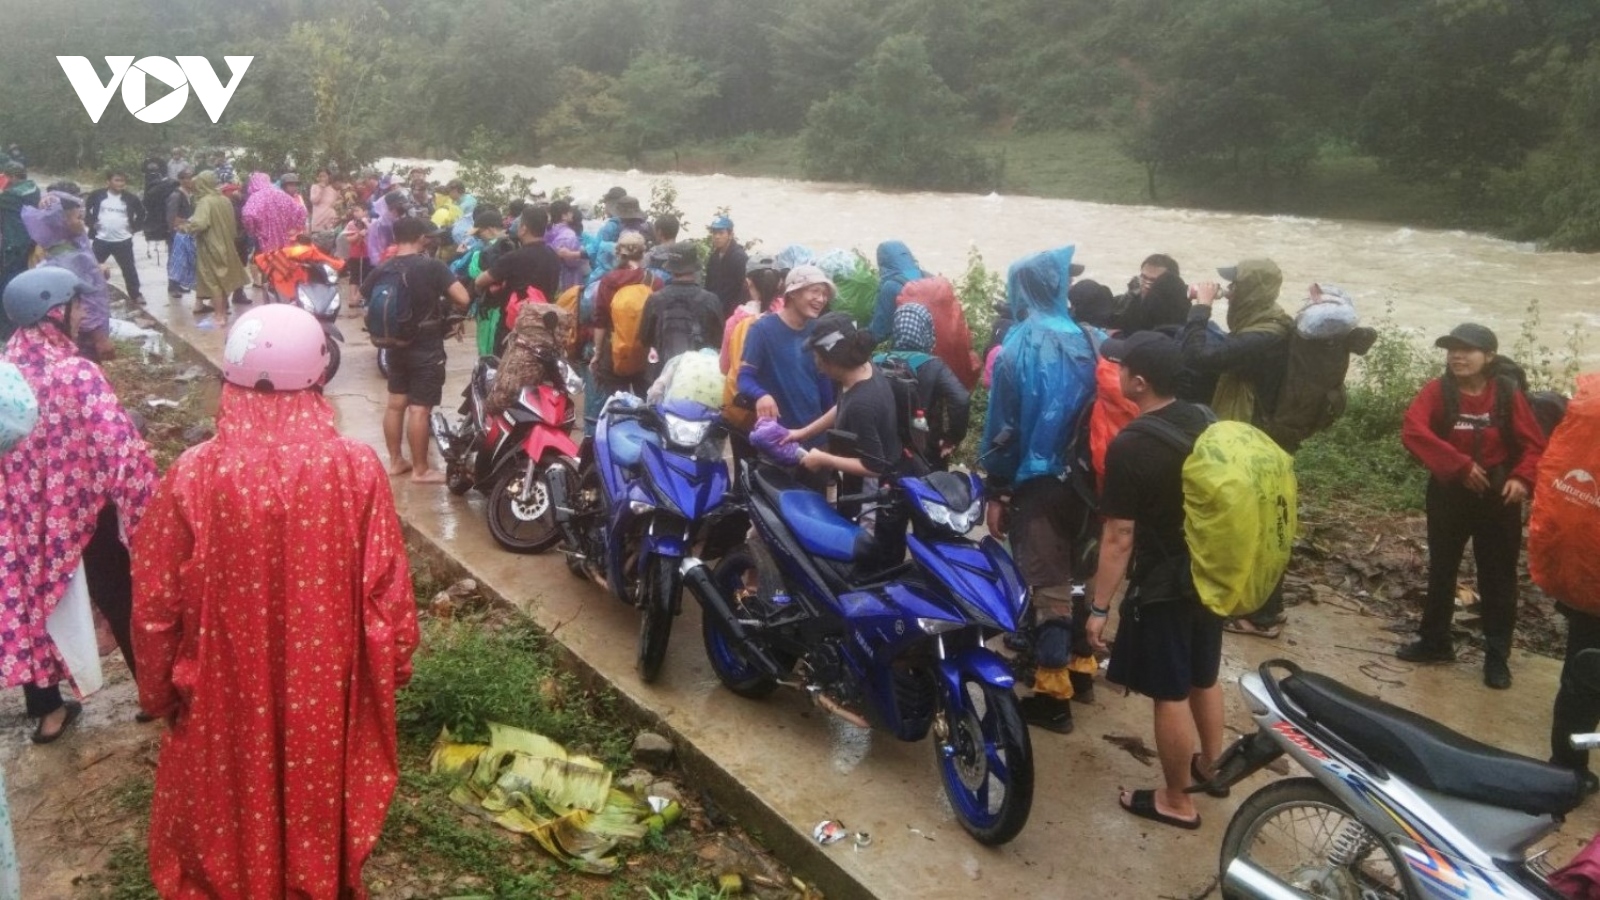 Đoàn du khách bị mất liên lạc ở Khánh Hòa đã trở về an toàn